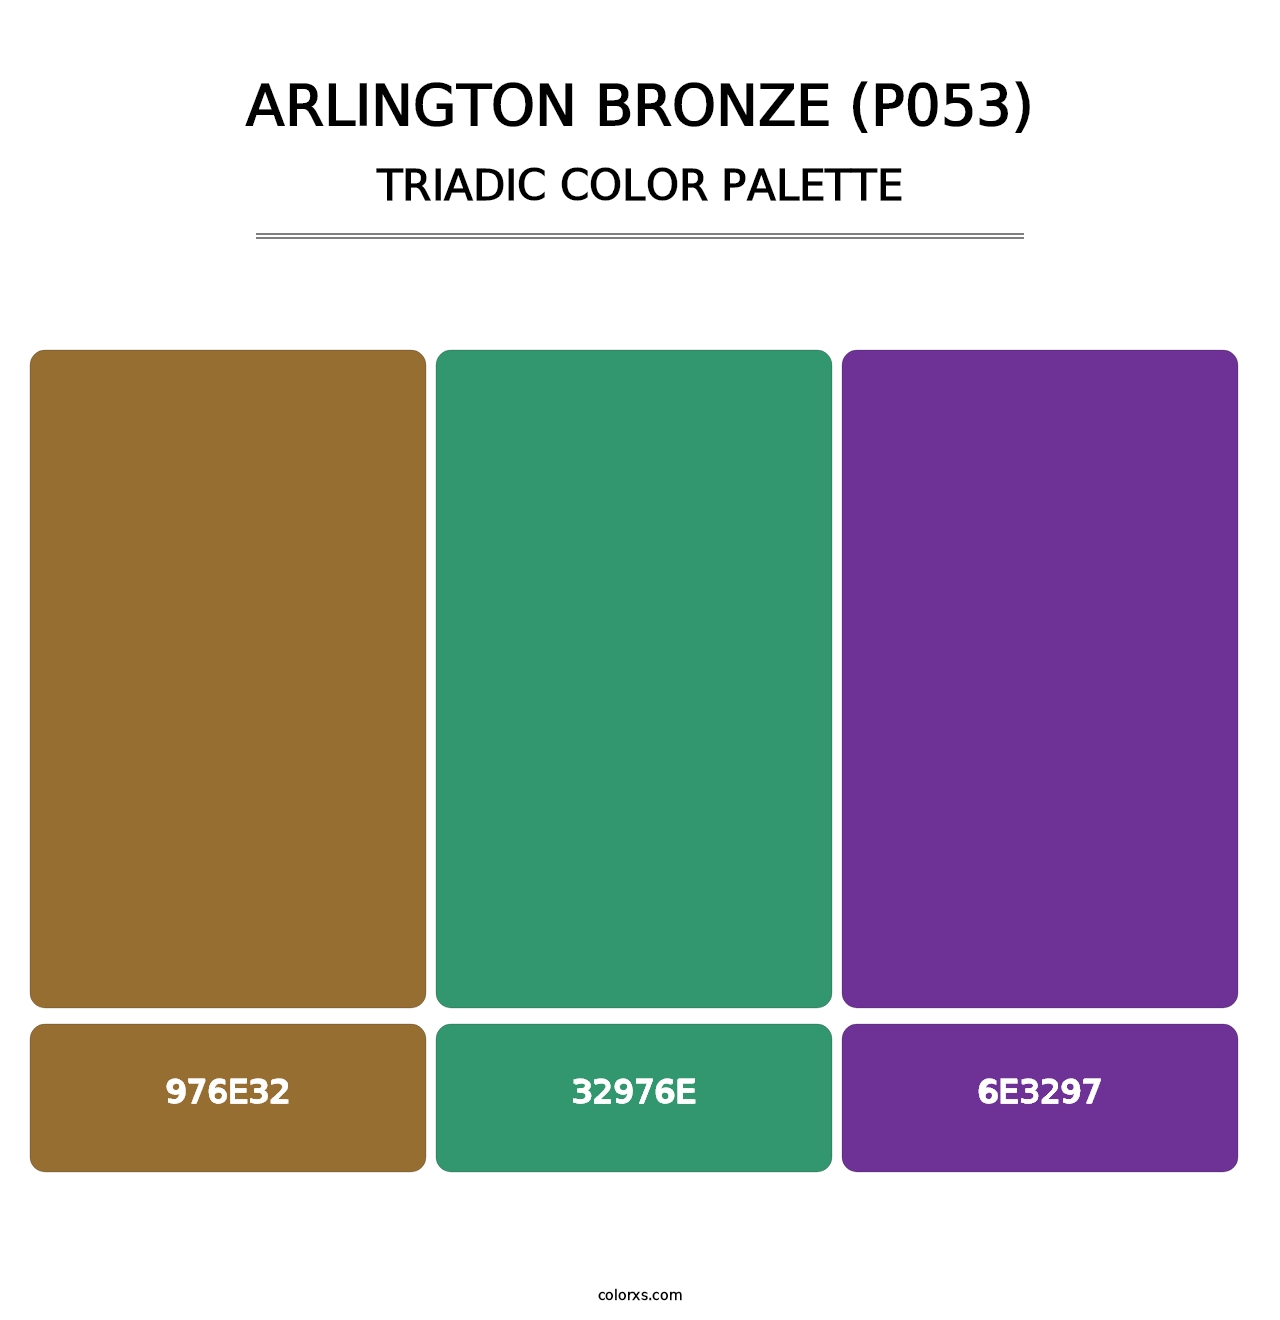 Arlington Bronze (P053) - Triadic Color Palette